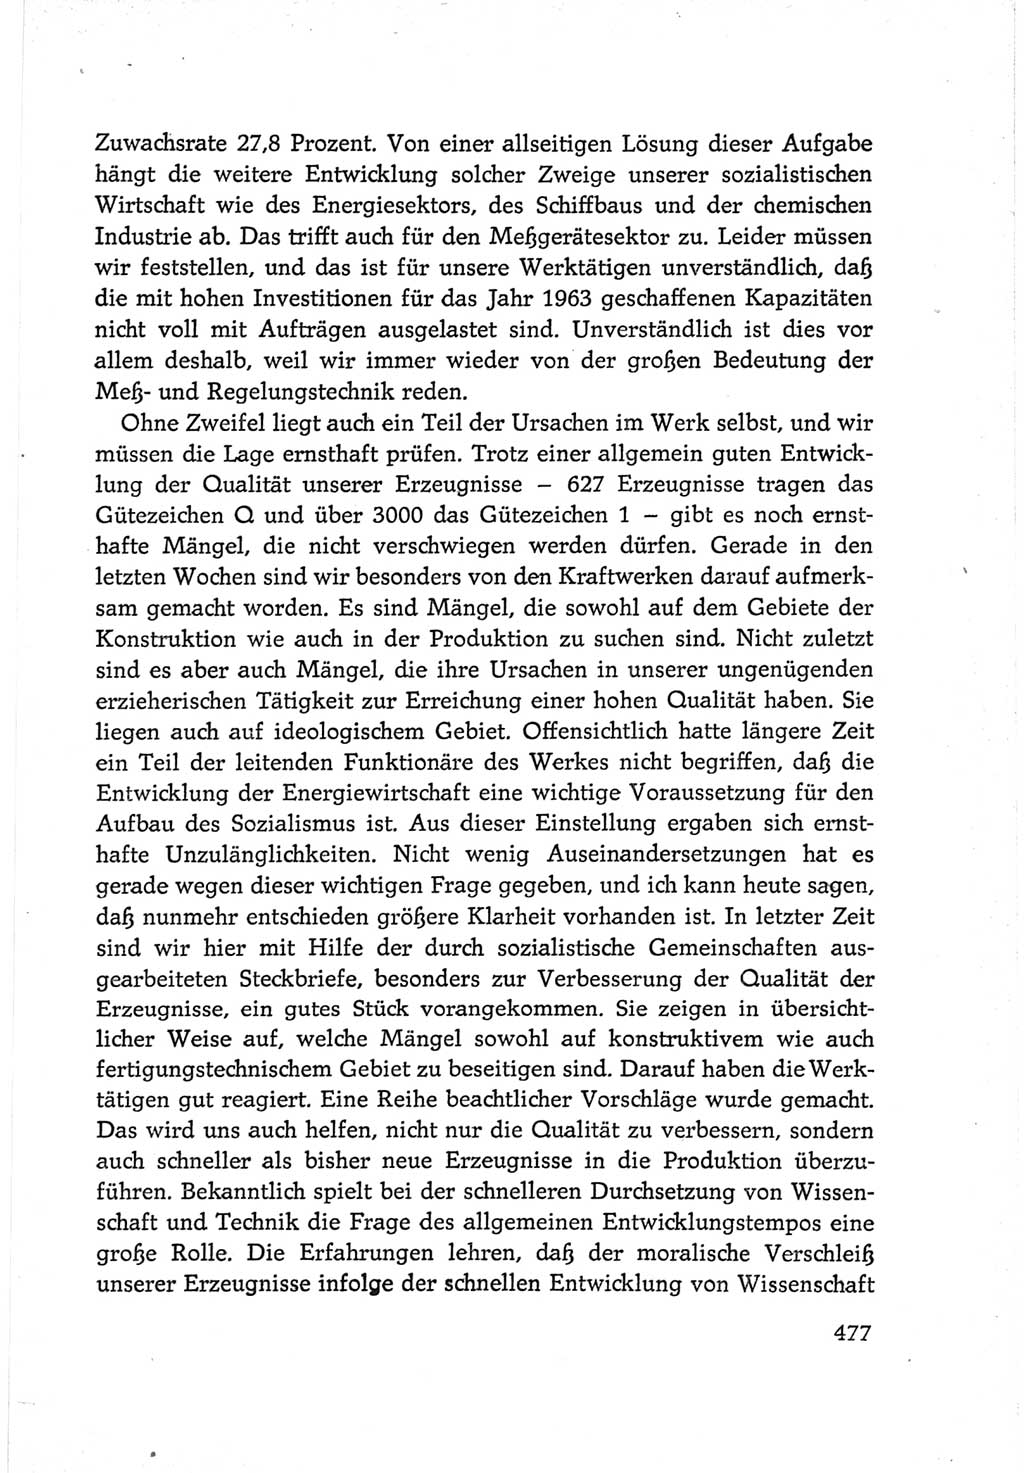 Protokoll der Verhandlungen des Ⅵ. Parteitages der Sozialistischen Einheitspartei Deutschlands (SED) [Deutsche Demokratische Republik (DDR)] 1963, Band Ⅲ, Seite 477 (Prot. Verh. Ⅵ. PT SED DDR 1963, Bd. Ⅲ, S. 477)